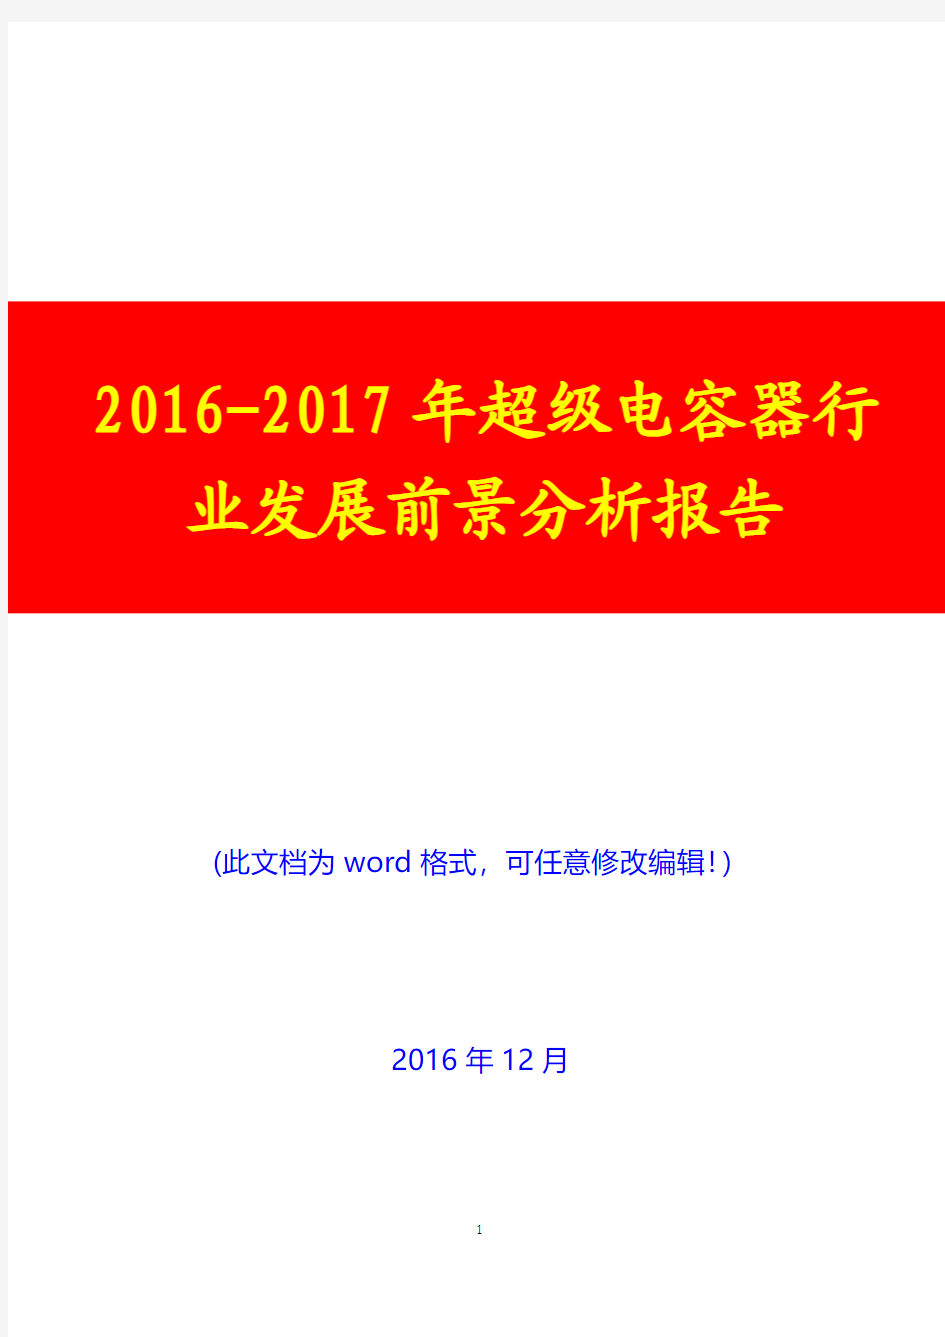 2016-2017年超级电容器行业现状及市场发展前景分析报告